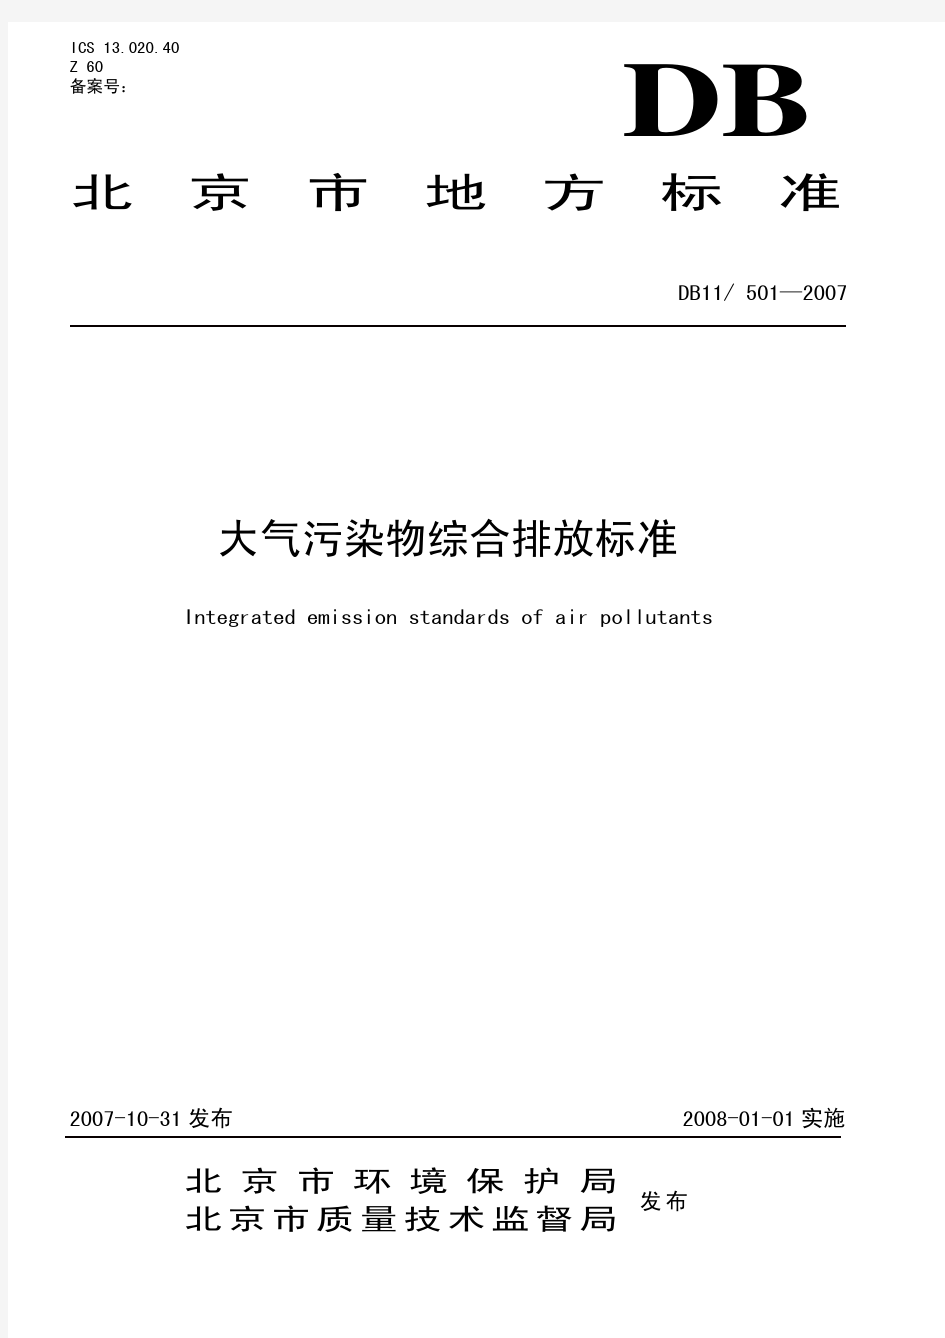 北京市大气污染物综合排放标准DB11-501—2007